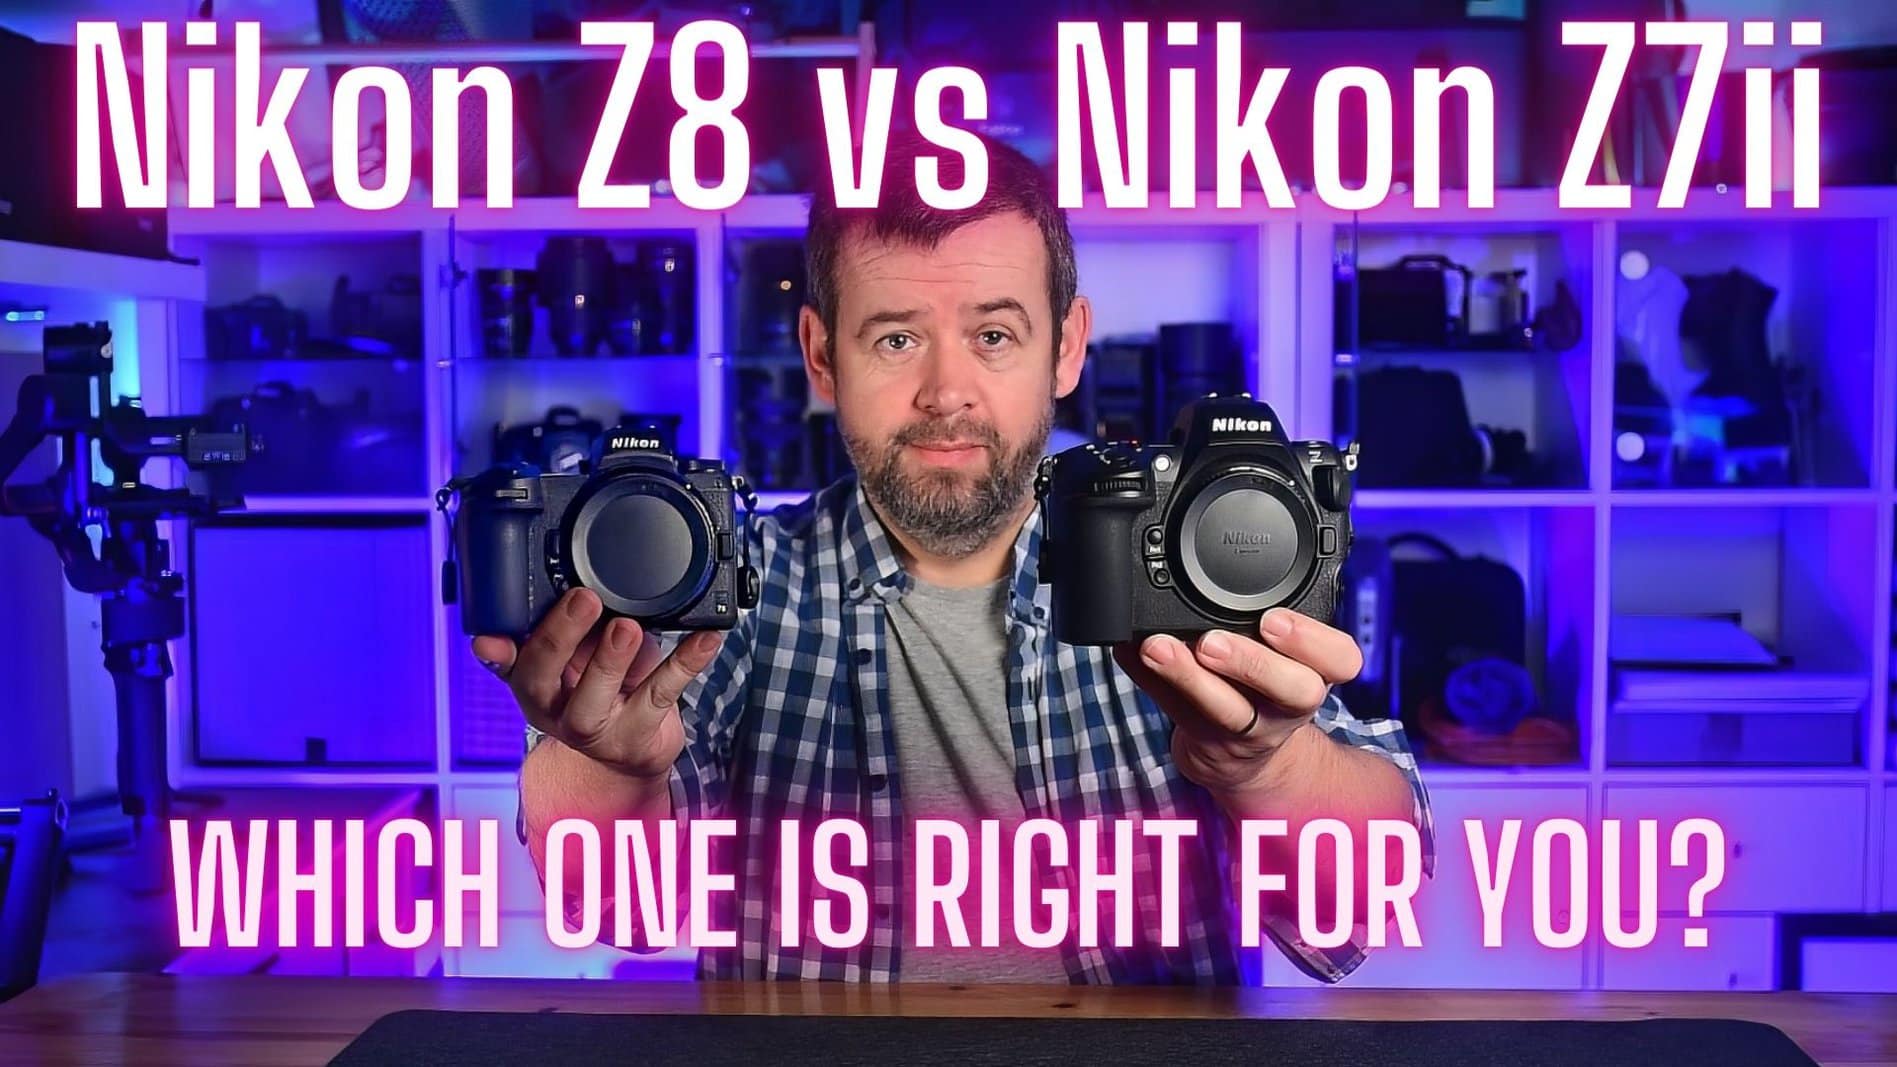 Nikon Z8 vs Nikon Z7ii Review